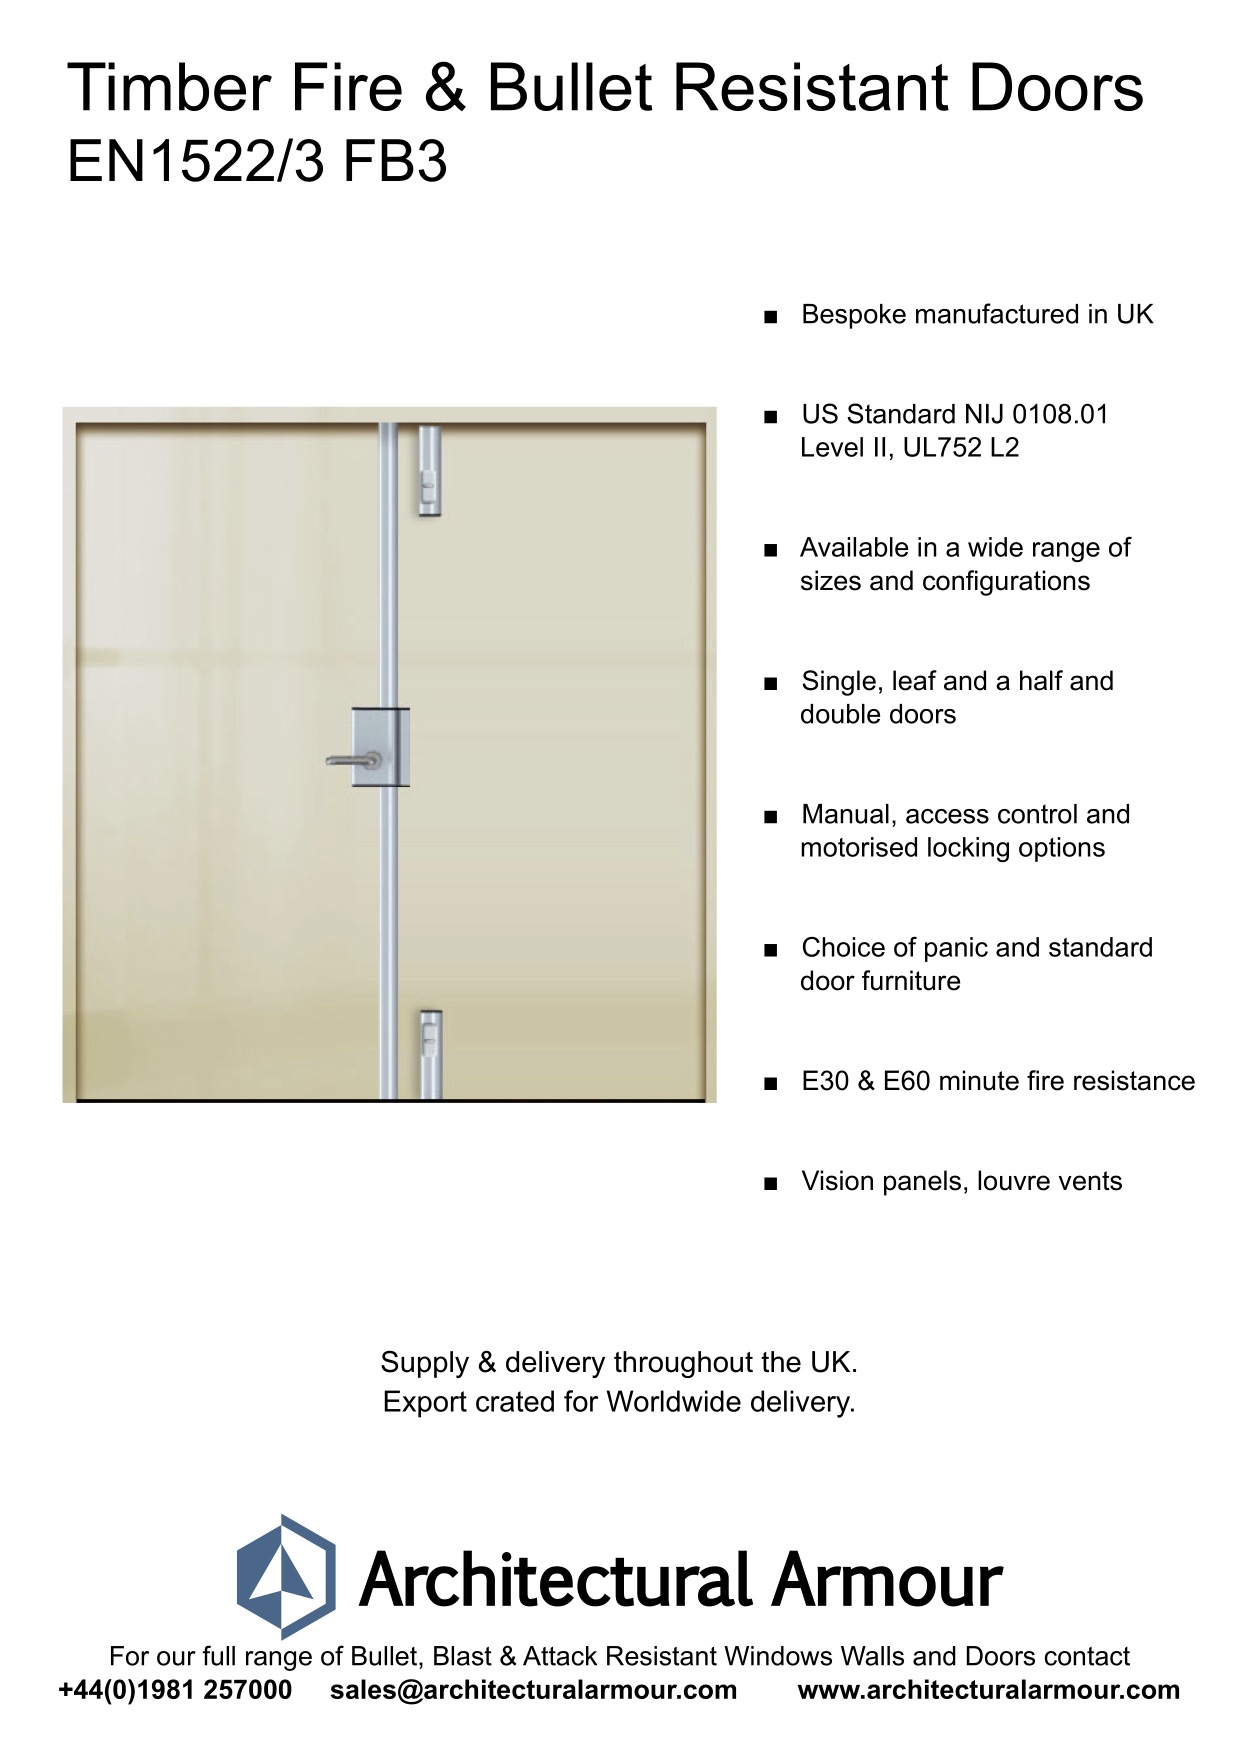 Fire-resistant-and-Bulletproof-Timber-Double-Doors-UK-EN1522-3-FB3